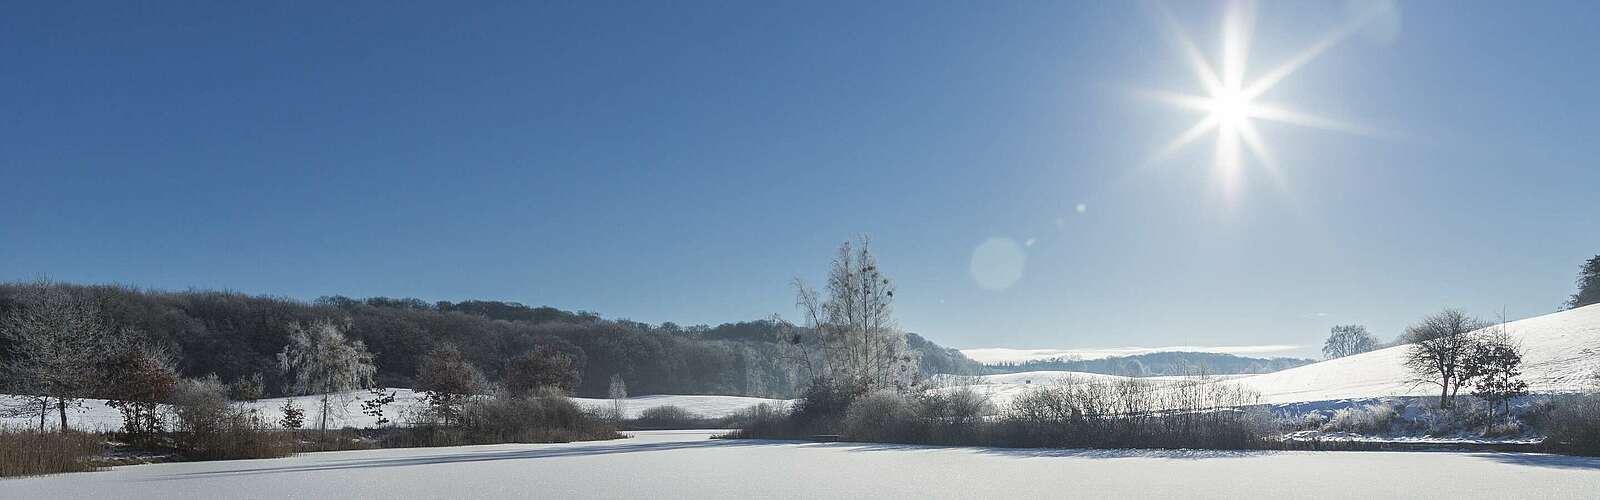 Winterliche Uckermark,
        
    

        Foto: TMB-Fotoarchiv/Steffen Lehmann